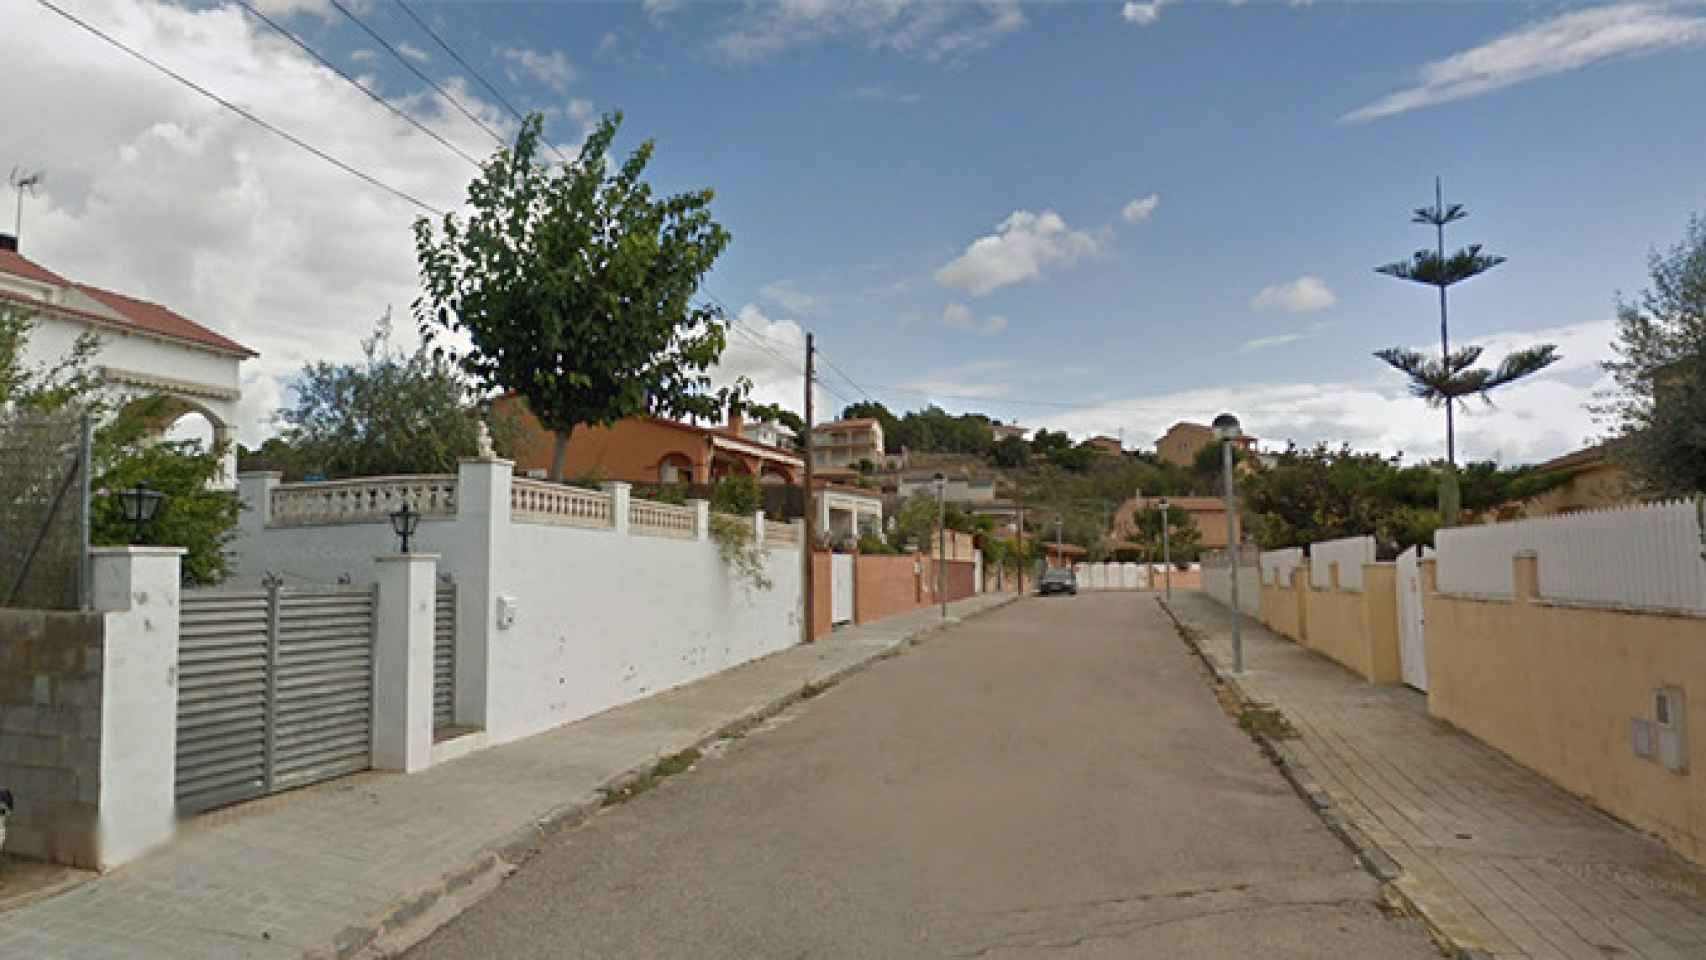 La calle de El Vendrell (Tarragona) donde ha sido hallada muerta una mujer / GOOGLE